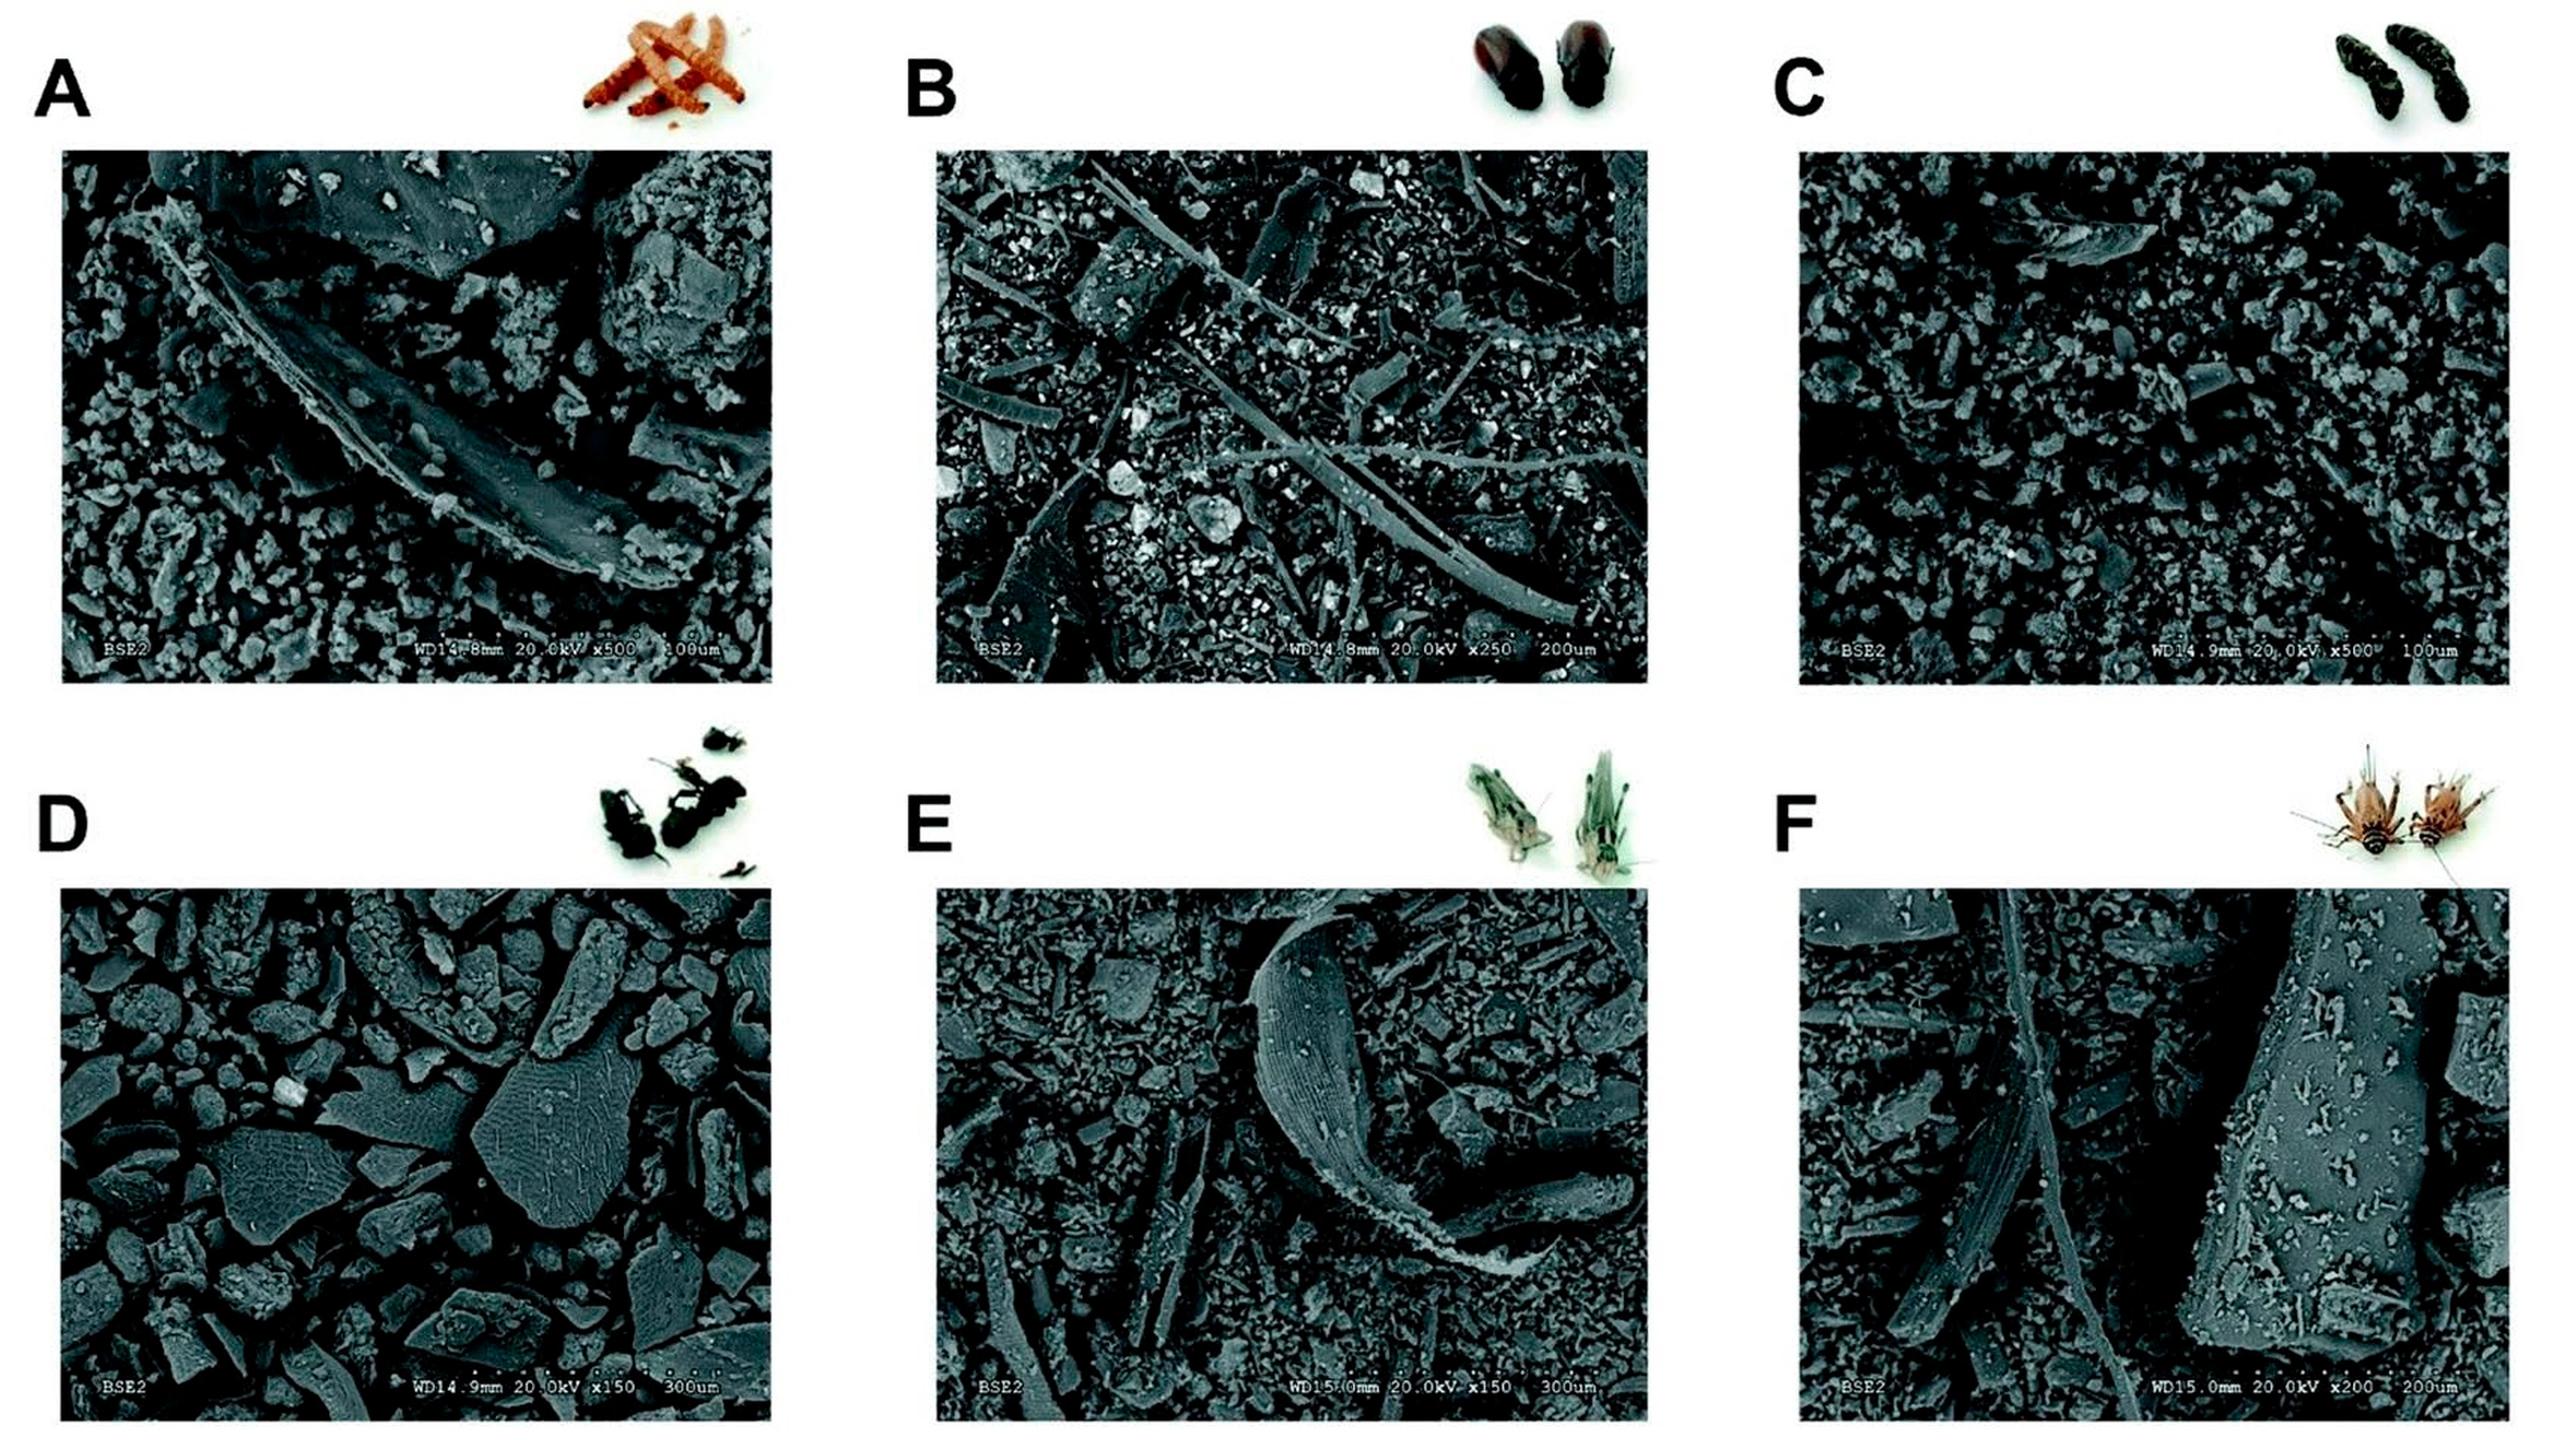 Imagen obtenida con microscopía electrónica de harinas de diferentes insectos: gusano de la harina (A), escarabajo (B), oruga (C), hormiga (D), langosta (E) y grillo (F).